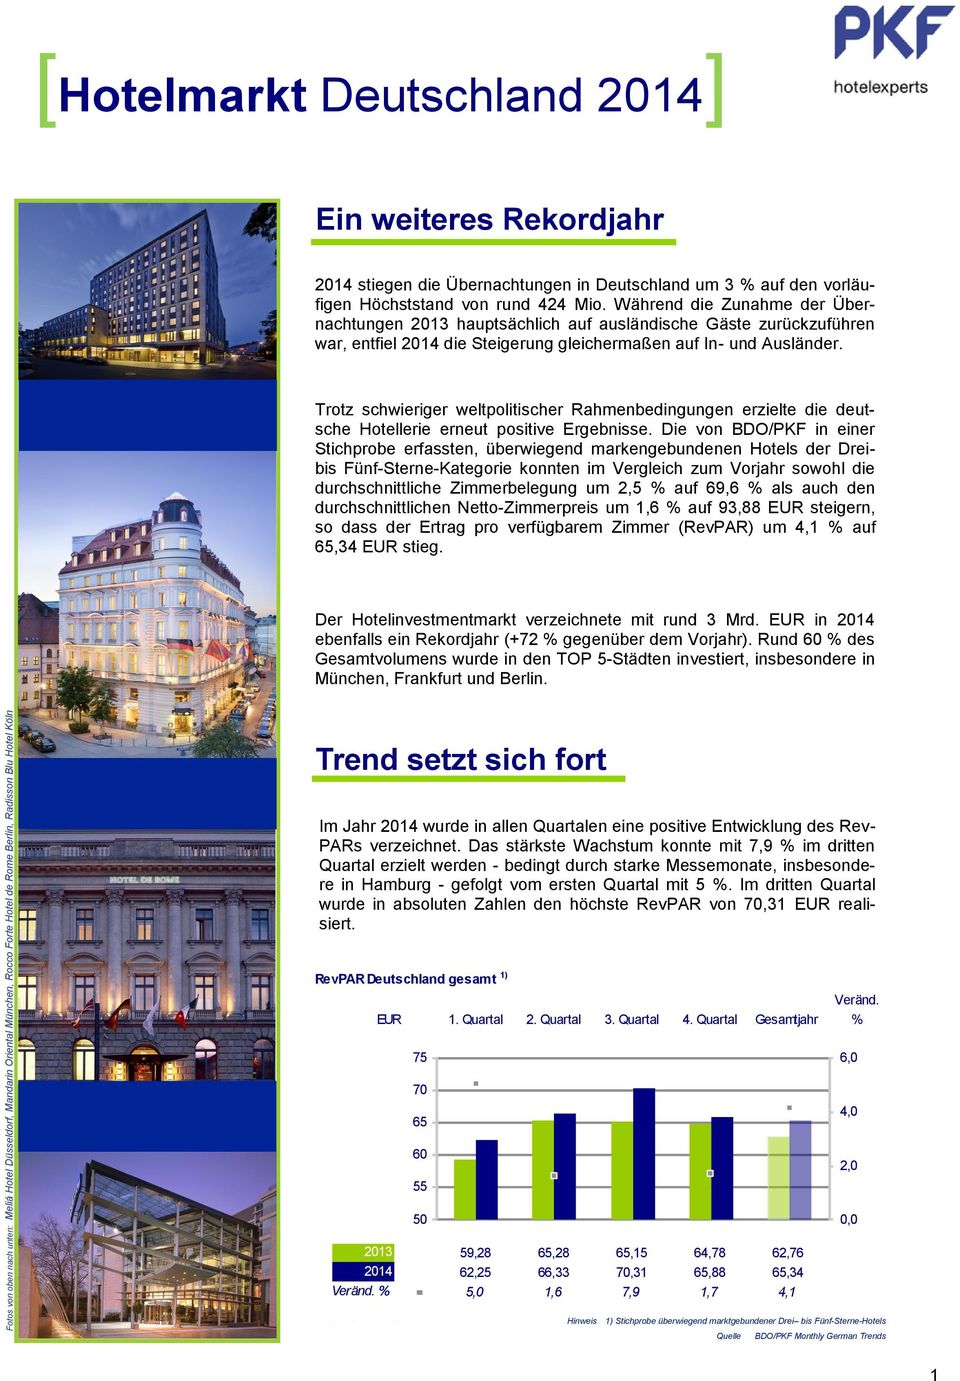 Trotz schwieriger weltpolitischer Rahmenbedingungen erzielte die deutsche Hotellerie erneut positive Ergebnisse.